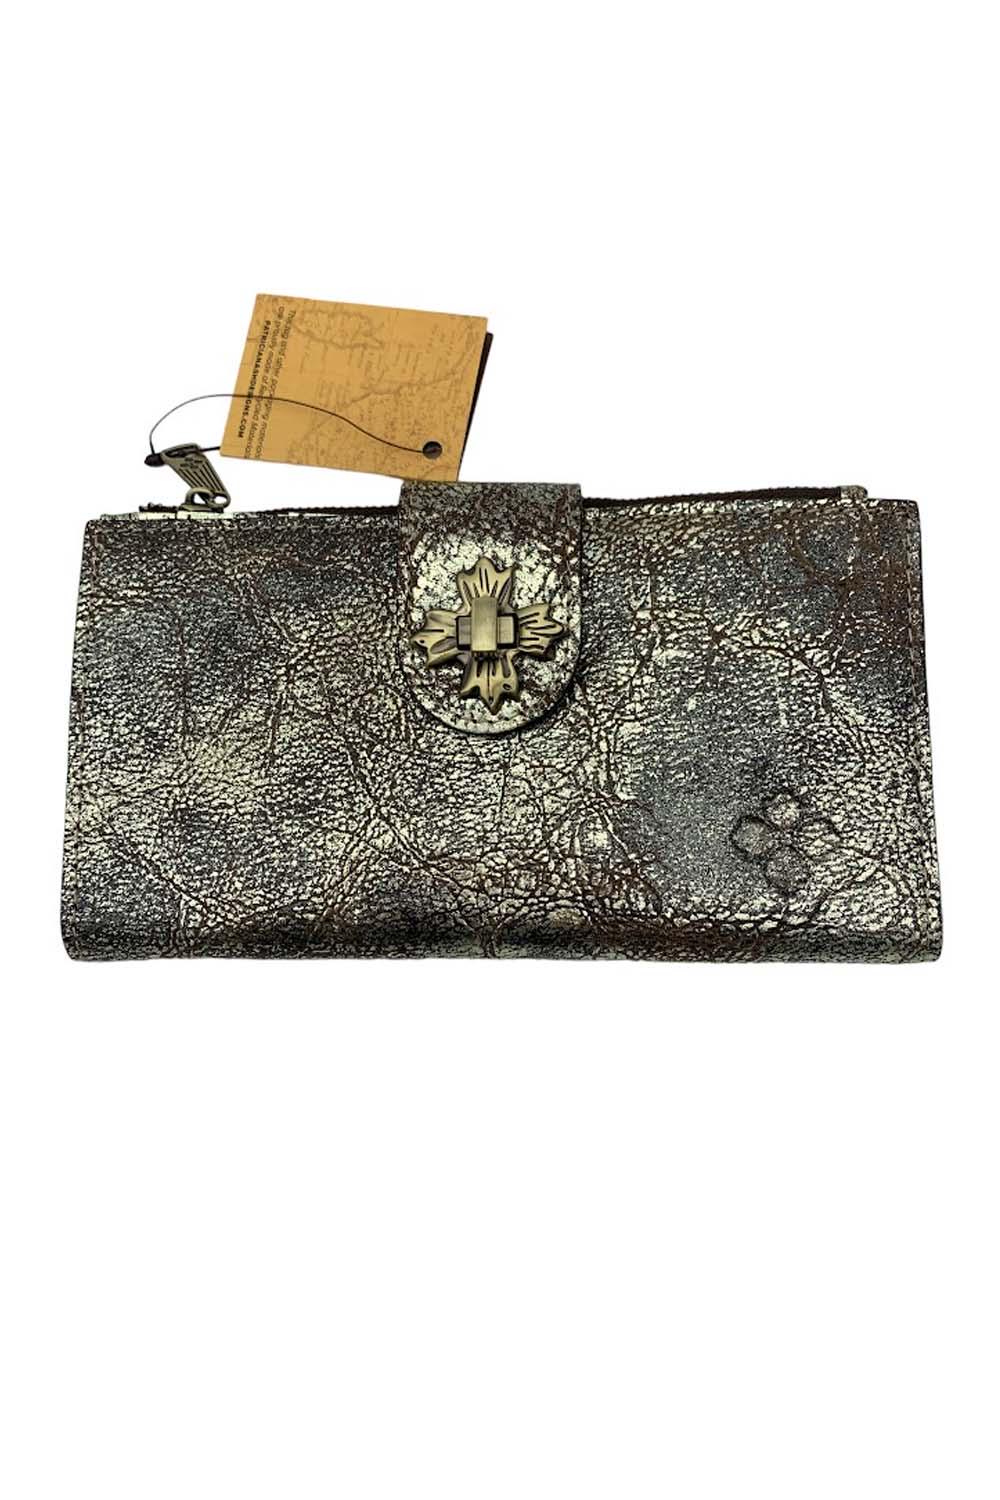 Large Leather Wallet, Twist Lock Wallet, Leather Purse, Women's Leather Wallets, Brown Wallet